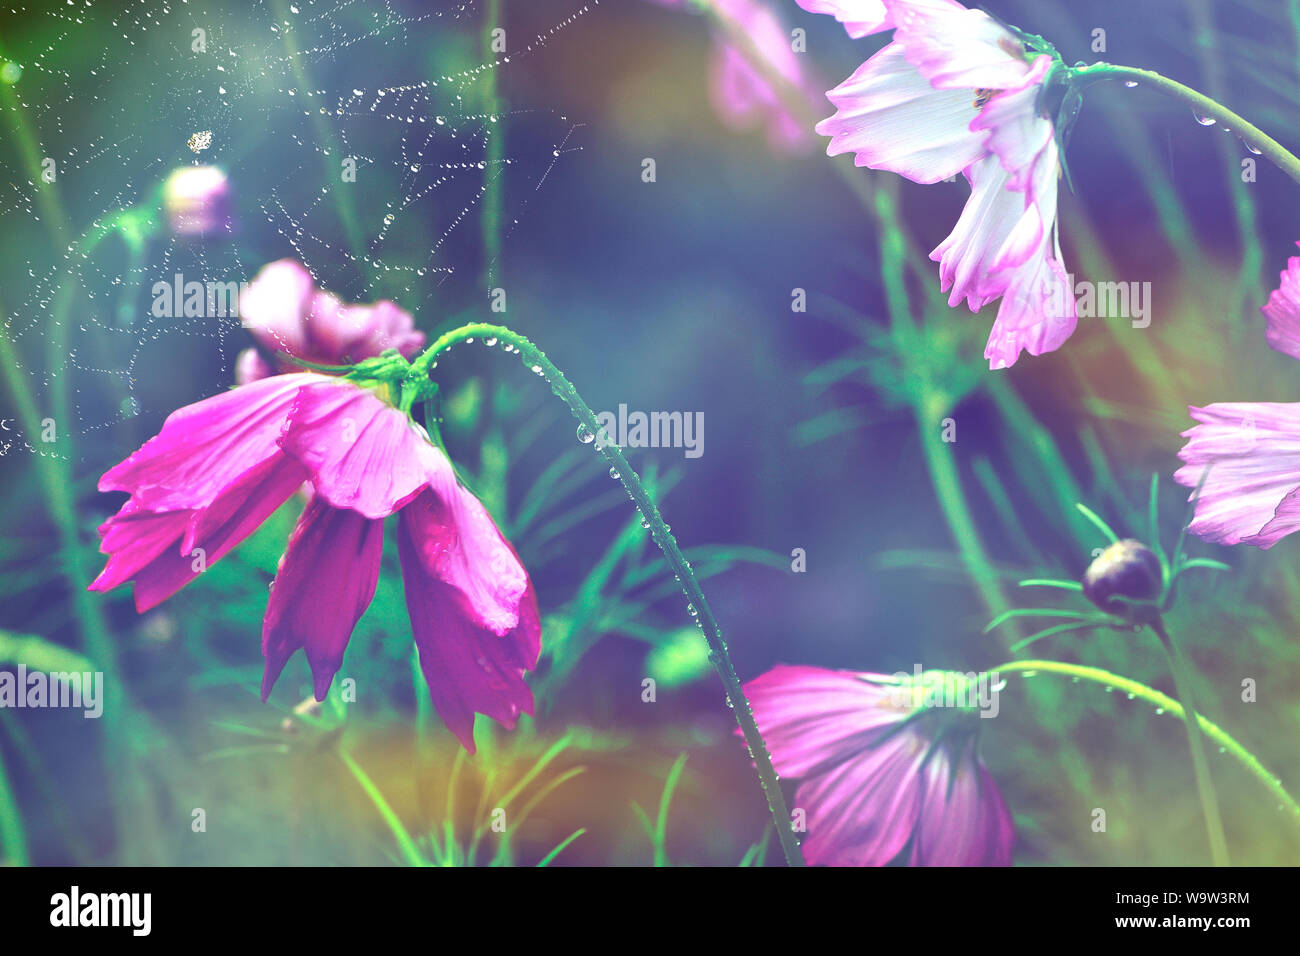 Regen fällt auf Rosa und Weiß cosmos Blumen und Spinnennetz im Hintergrund. Künstlerische Sommer oder Herbst getönten Hintergrund. Morgennebel und Frische Stockfoto